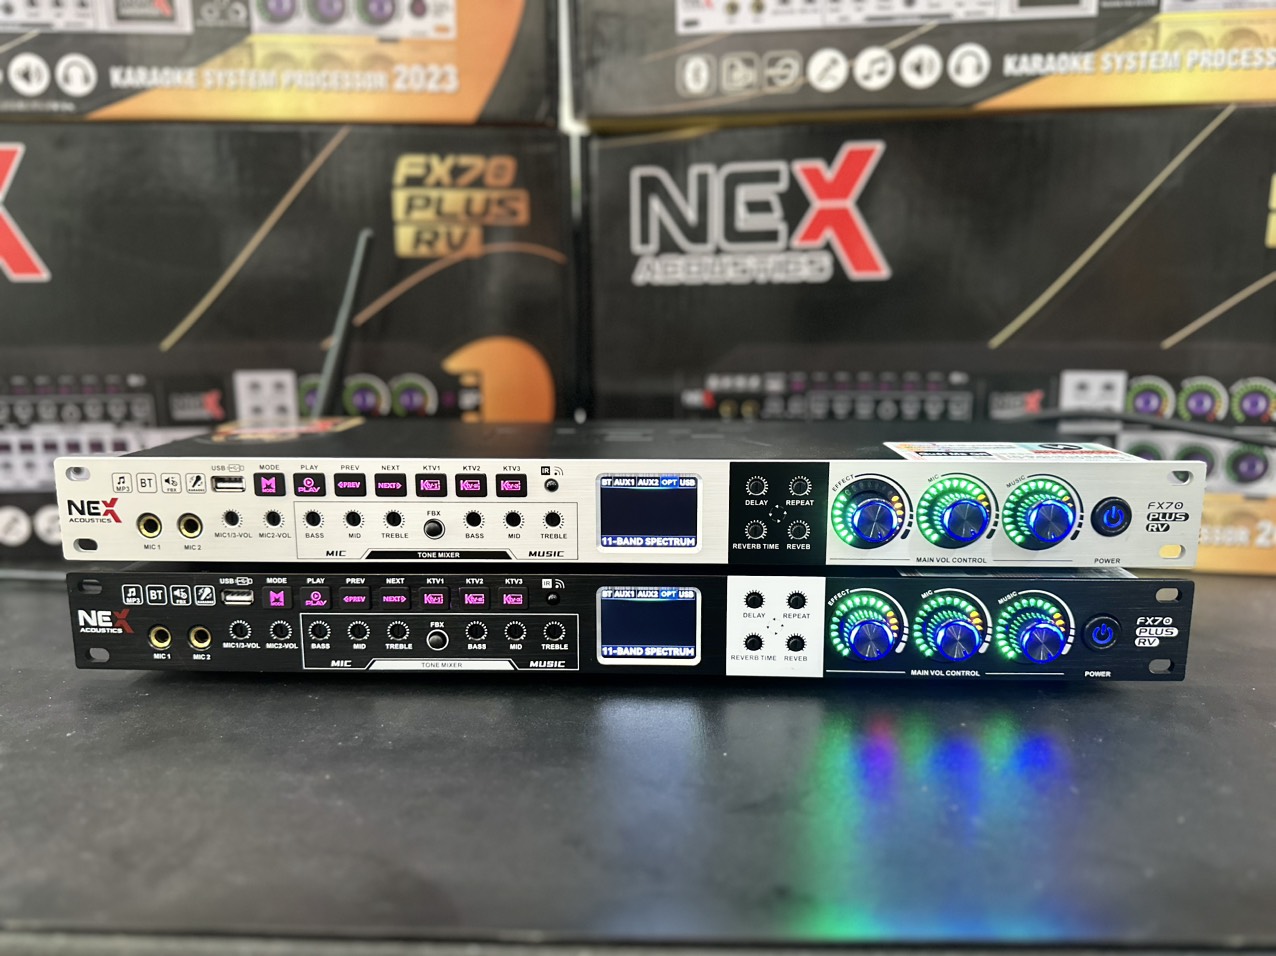 Vang cơ Lai Số Nex FX70 Plus - Vang cơ thế hệ mới tích hợp 3 chế độ KTV karaoke chuyên nghiệp - Hàng Nhập Khẩu